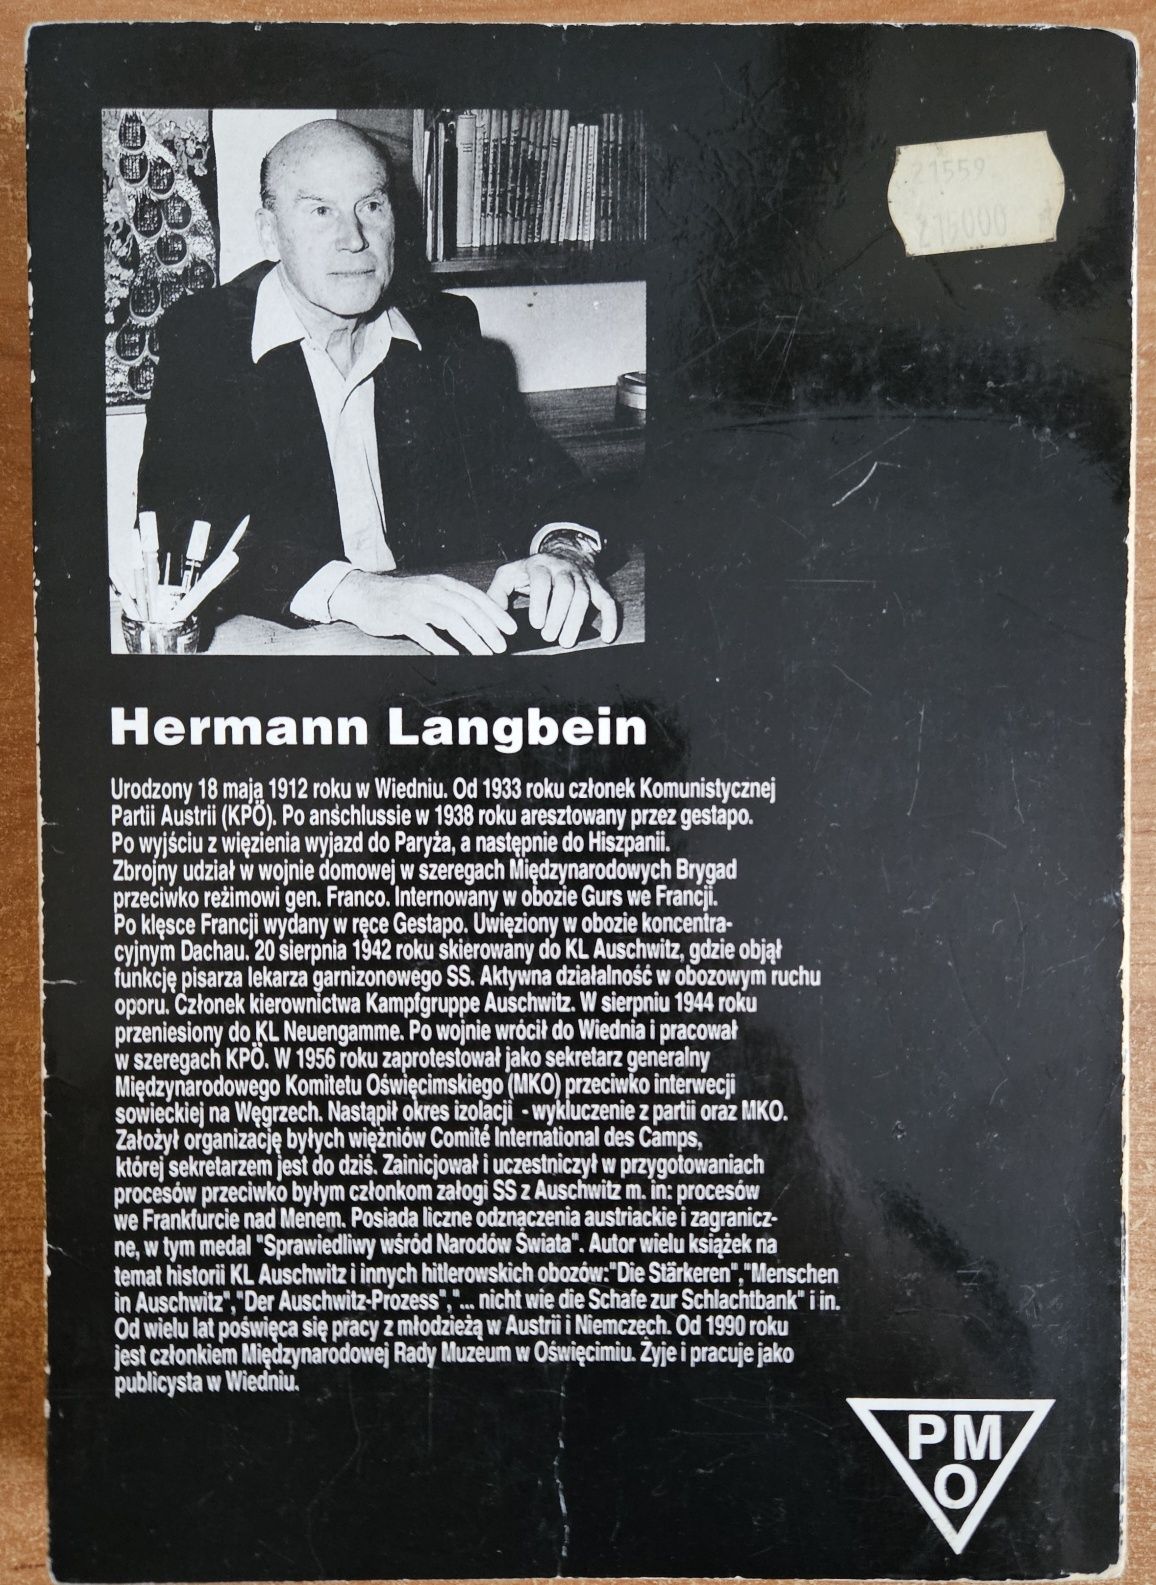 Ludzie w Auschwitz - Herman Langbein